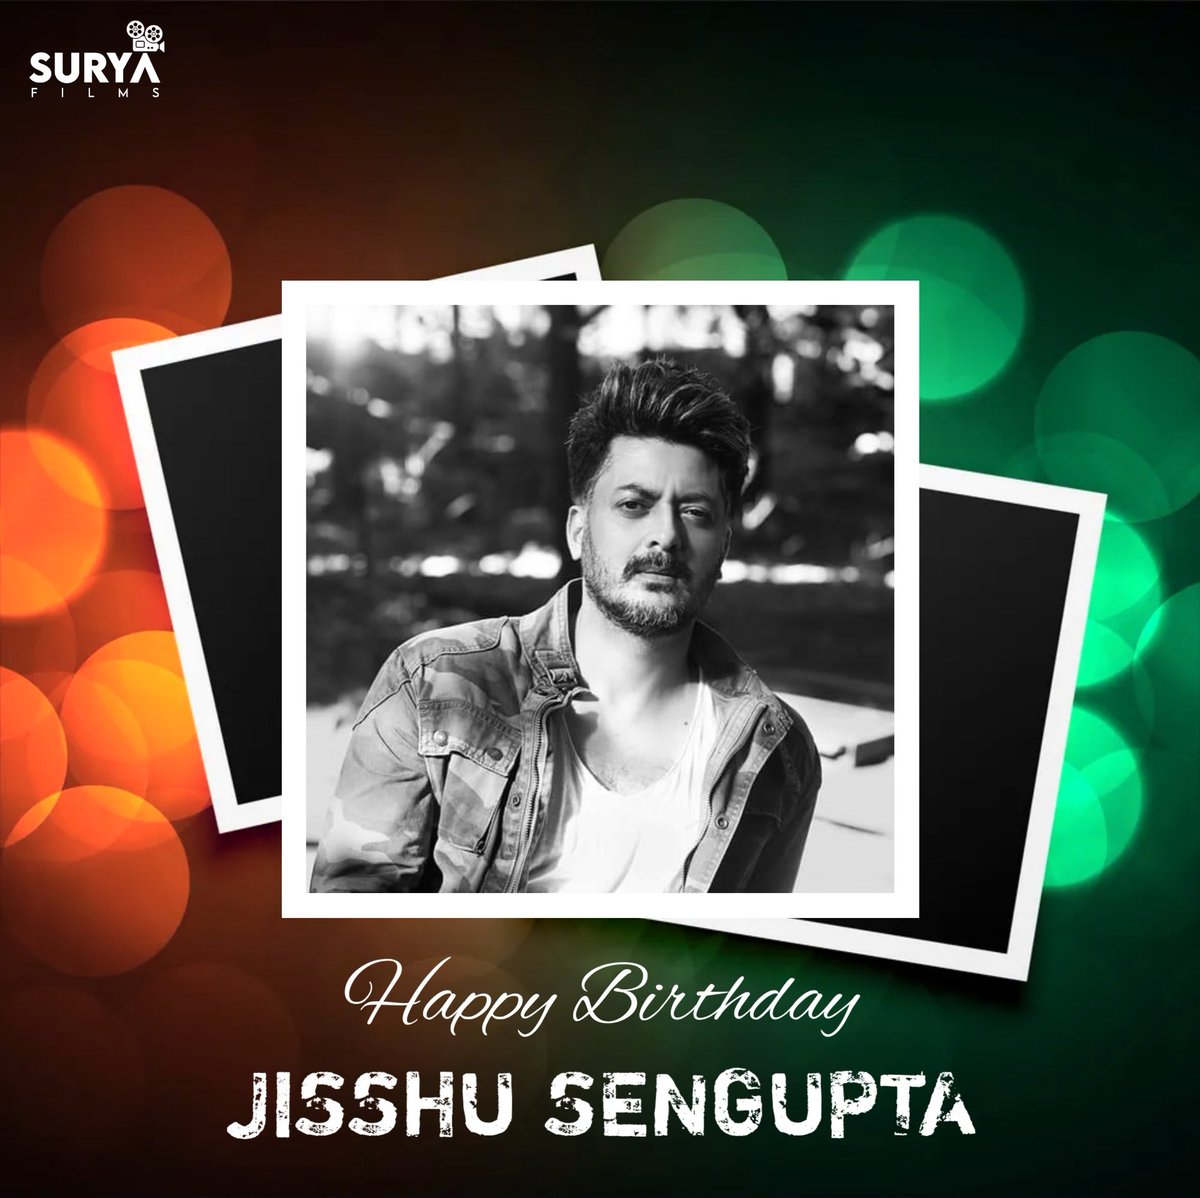 শুভ জন্মদিন 🎂
#SuryaFilms #JishuSengupta #happybirthday #suryafilmsproduction